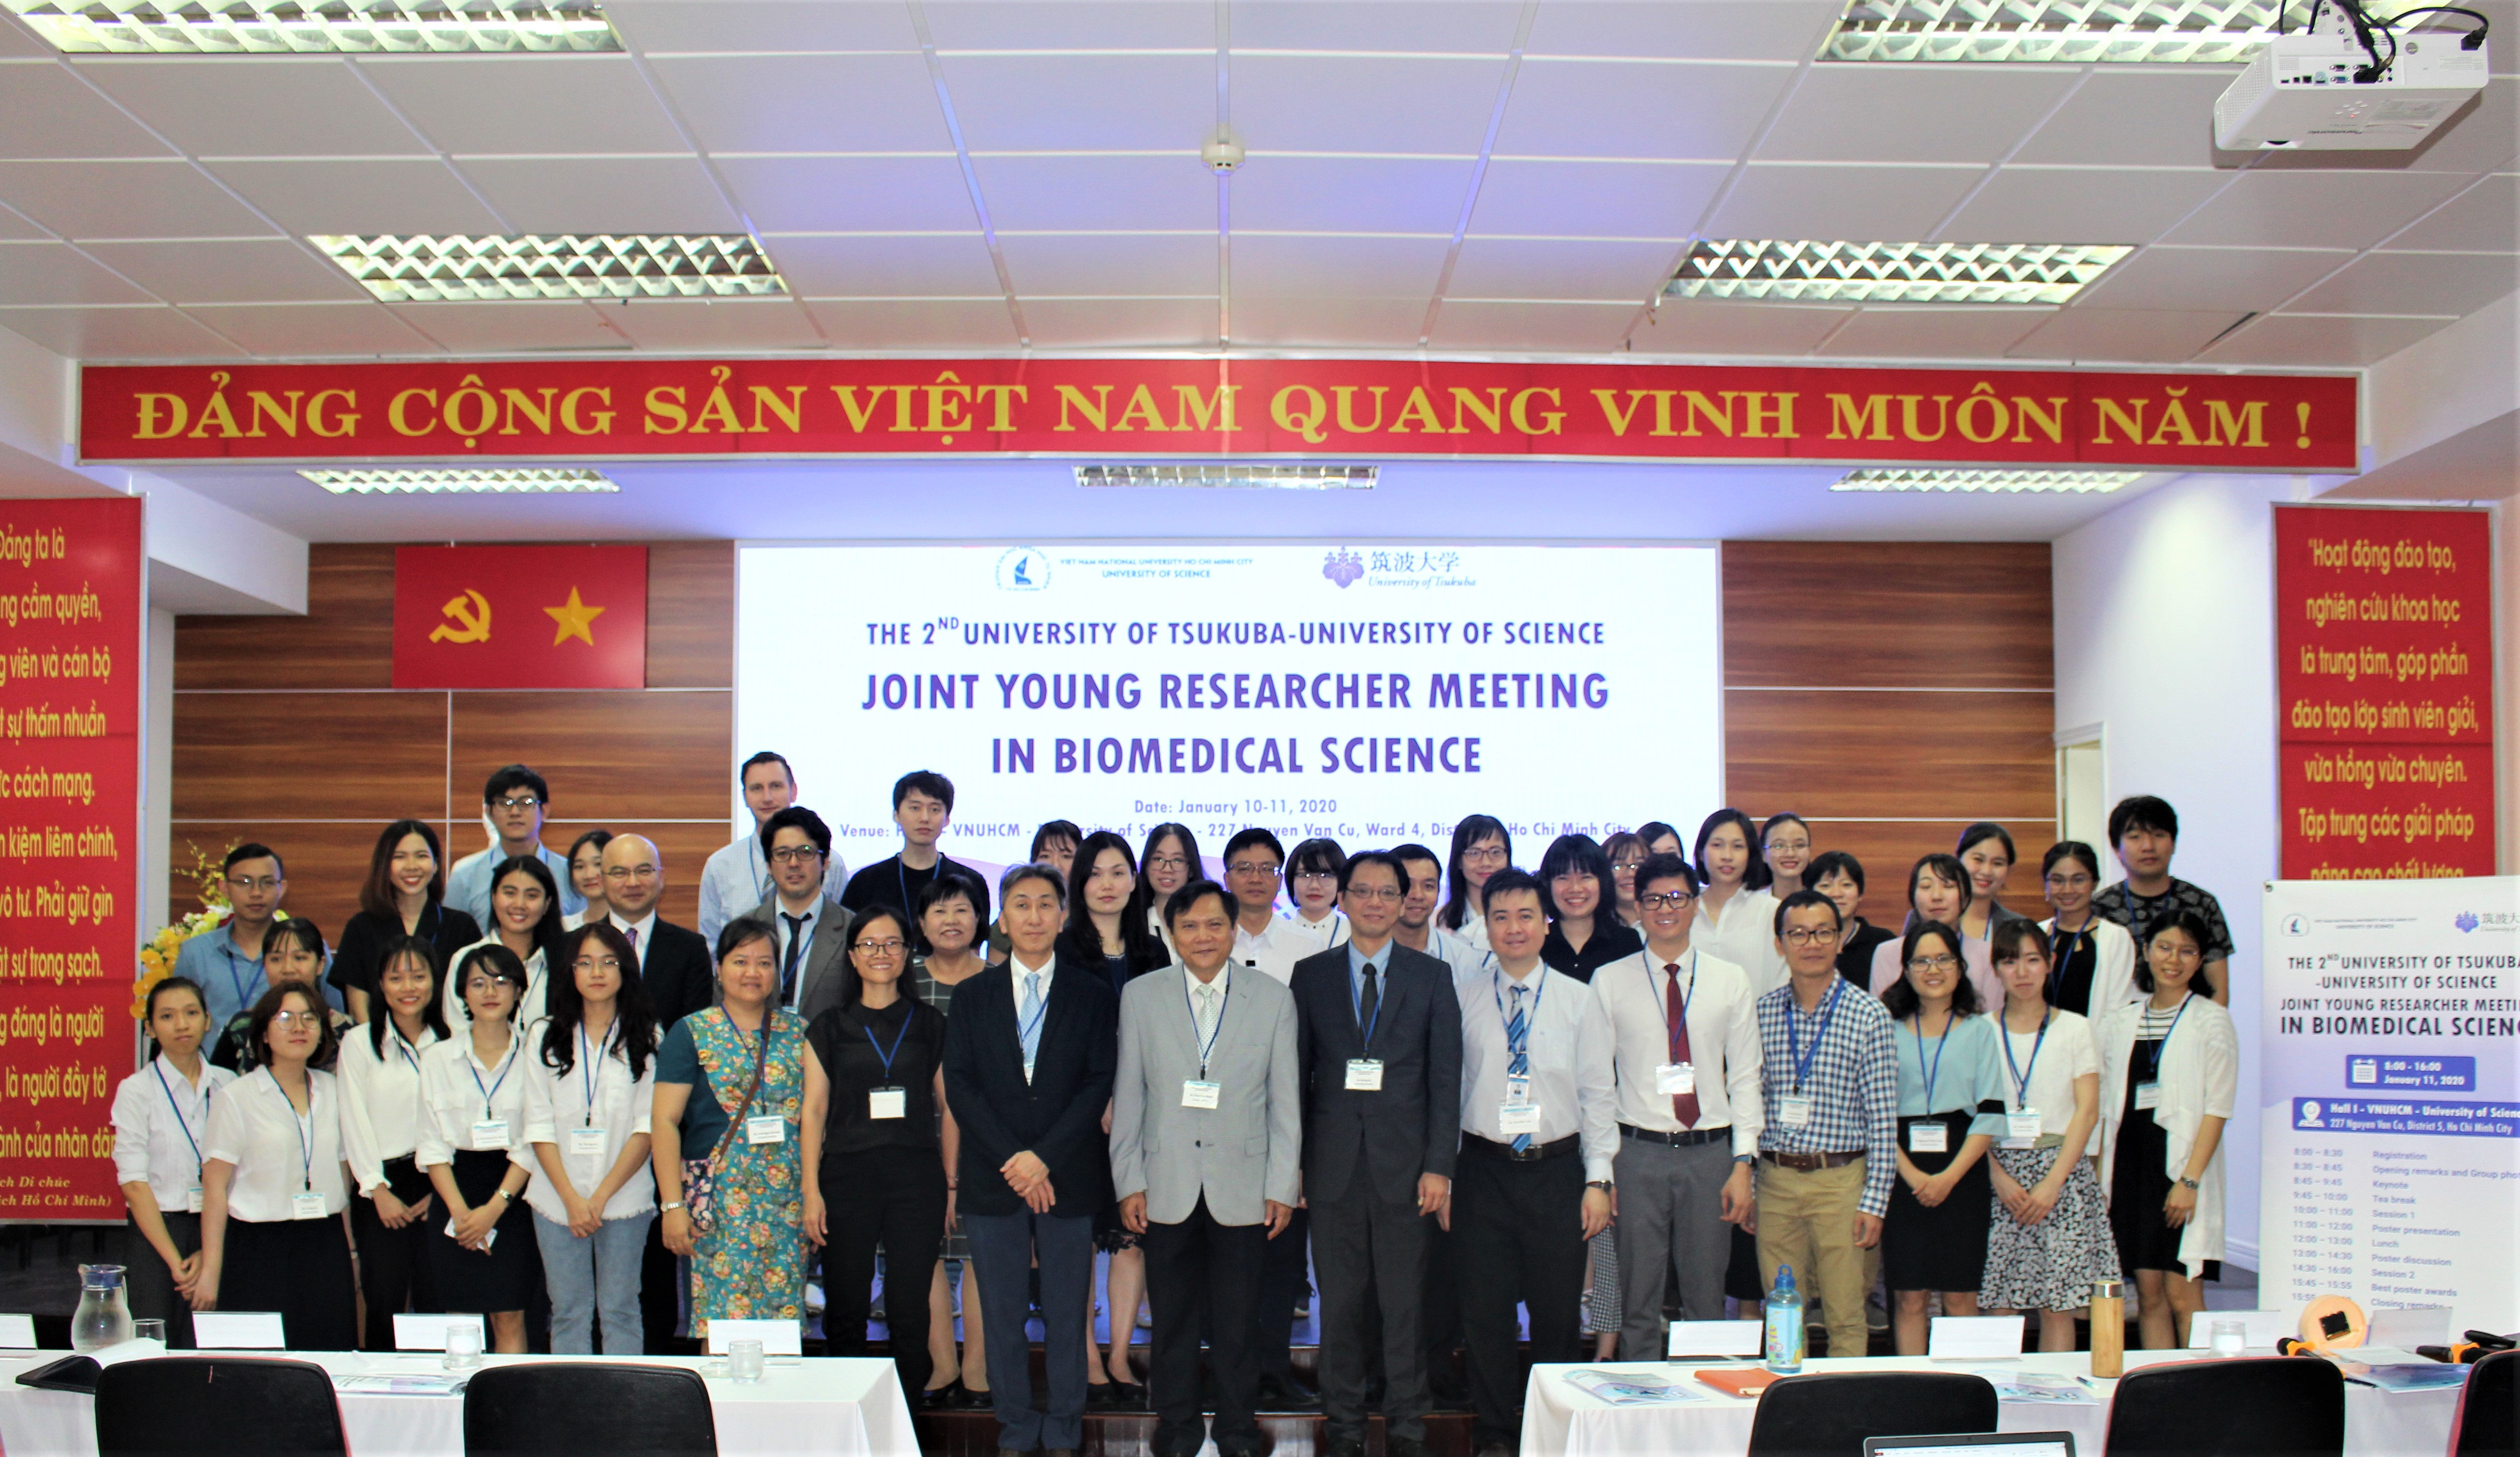 Hội nghị kết nối các nhà nghiên cứu trẻ trong lĩnh vực khoa học Y Sinh lần 2 